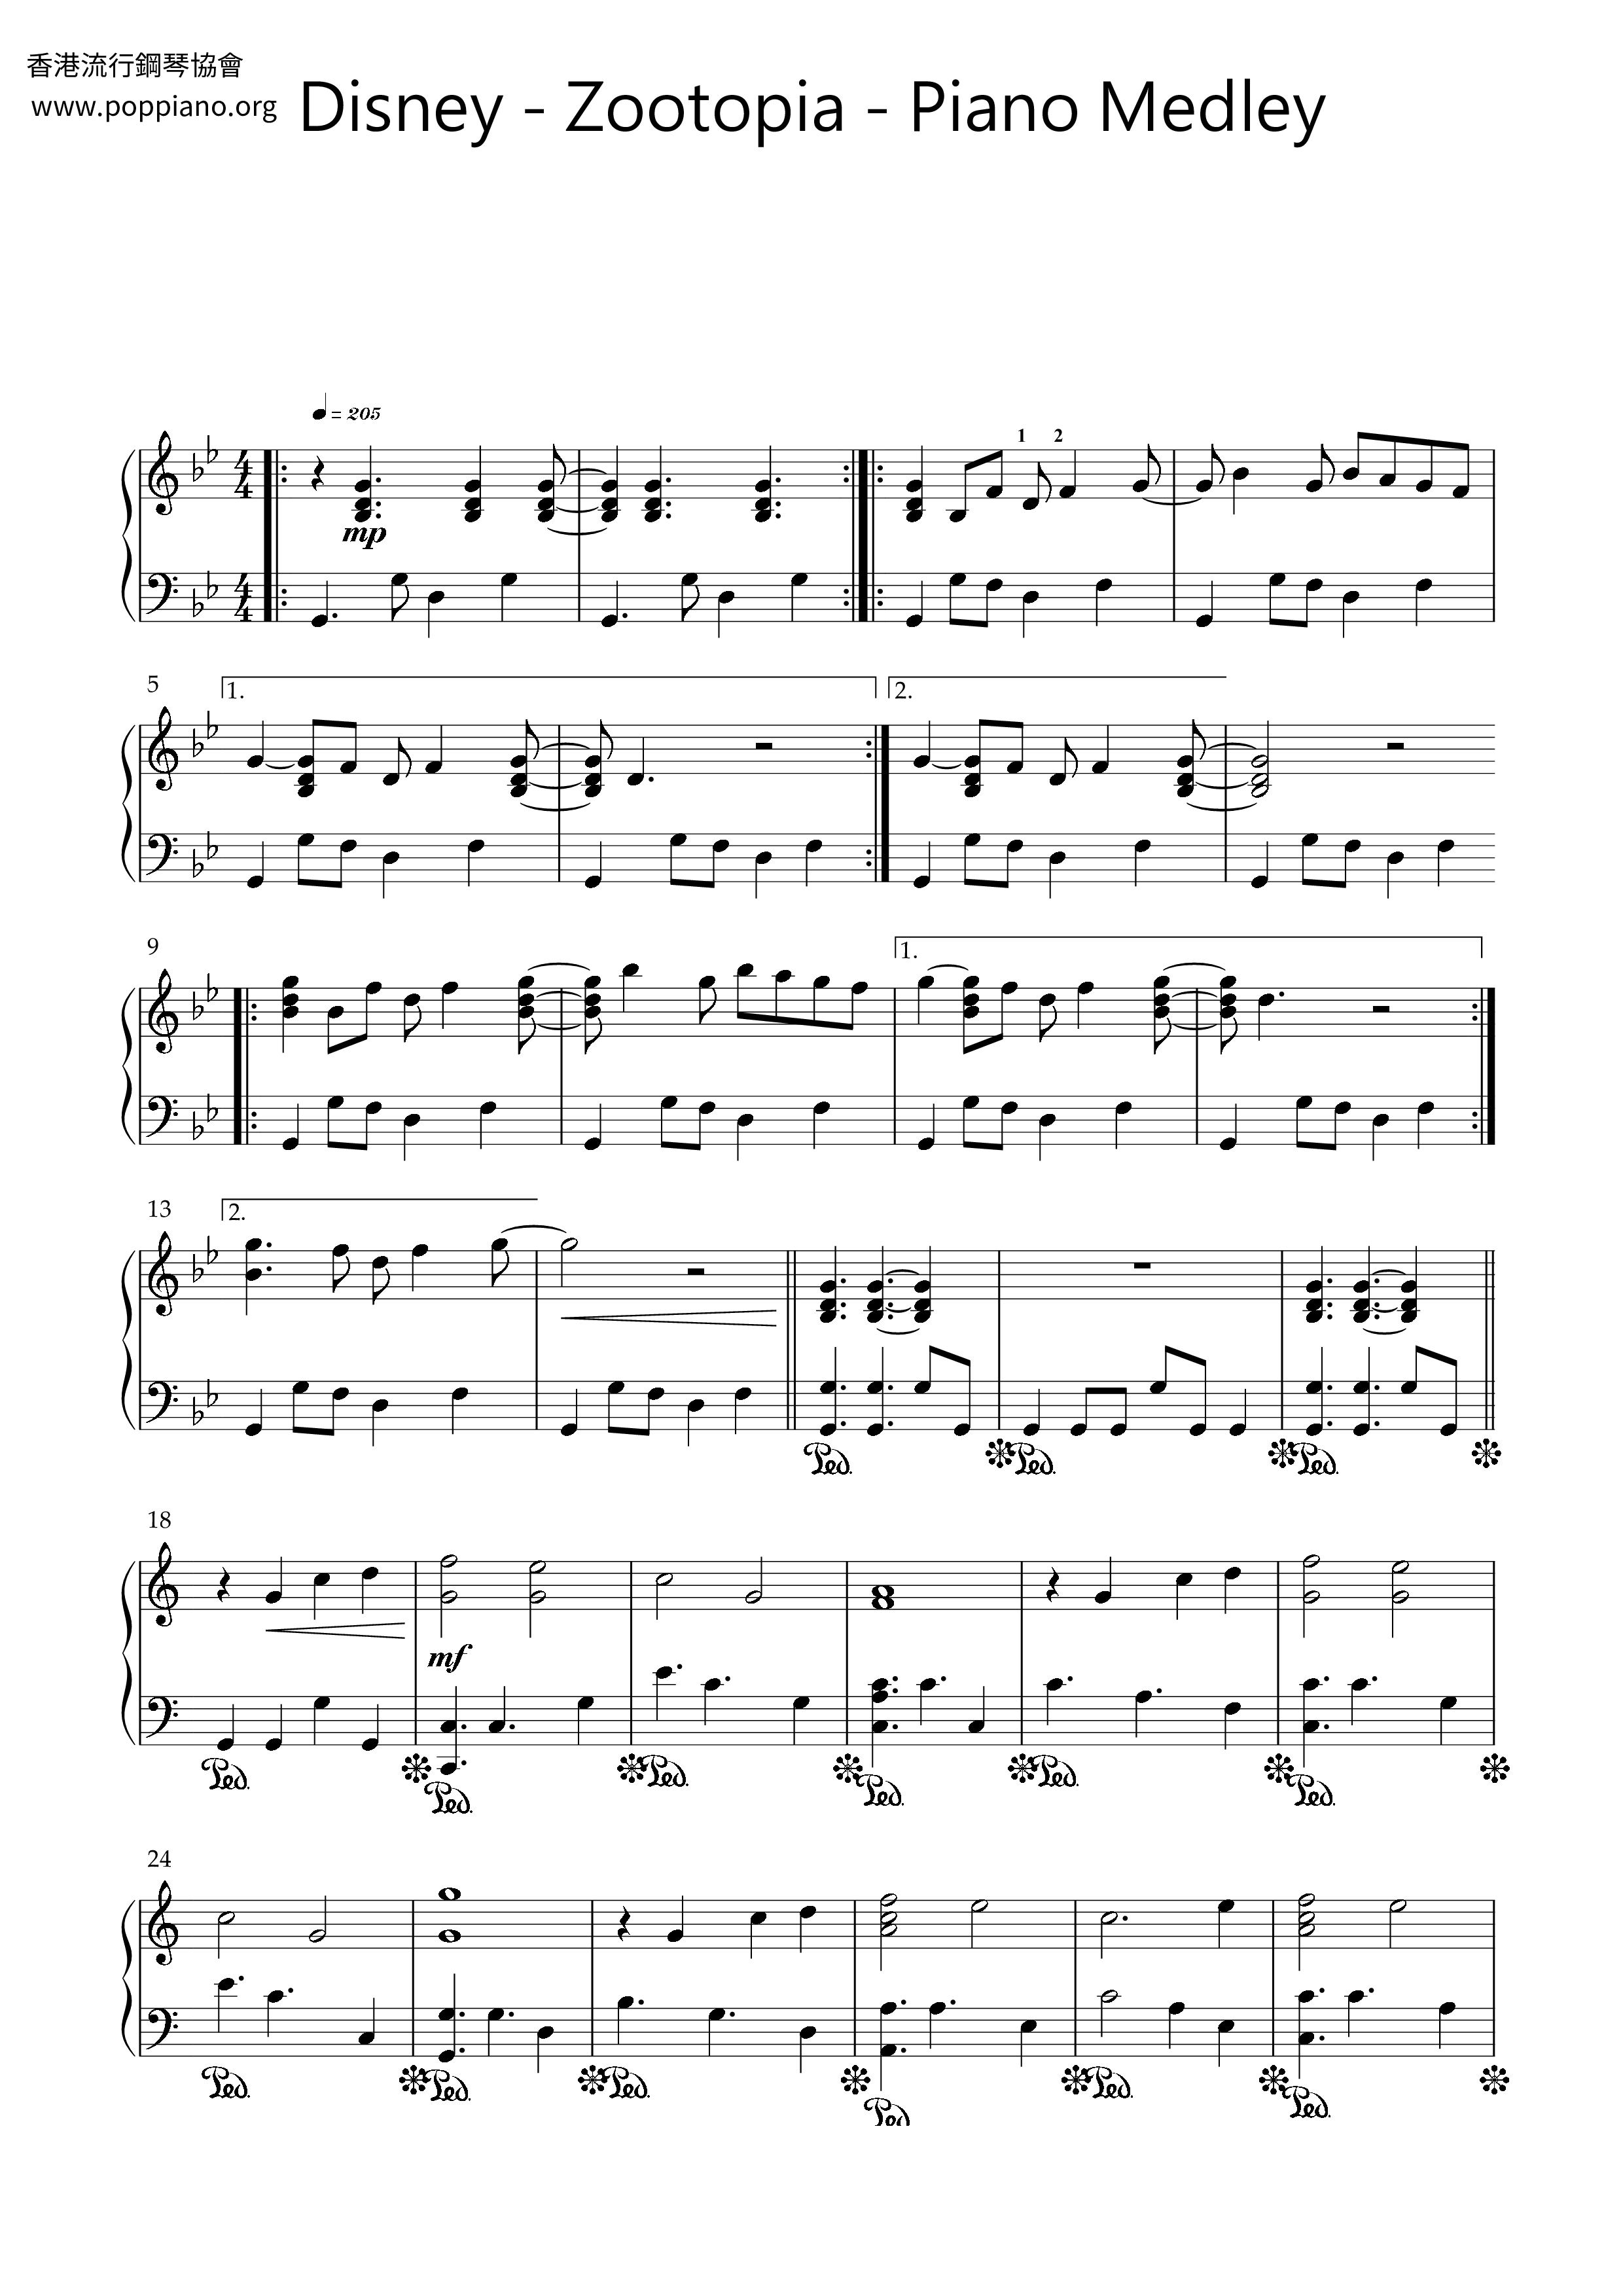 Zootopia - Piano Medleyピアノ譜